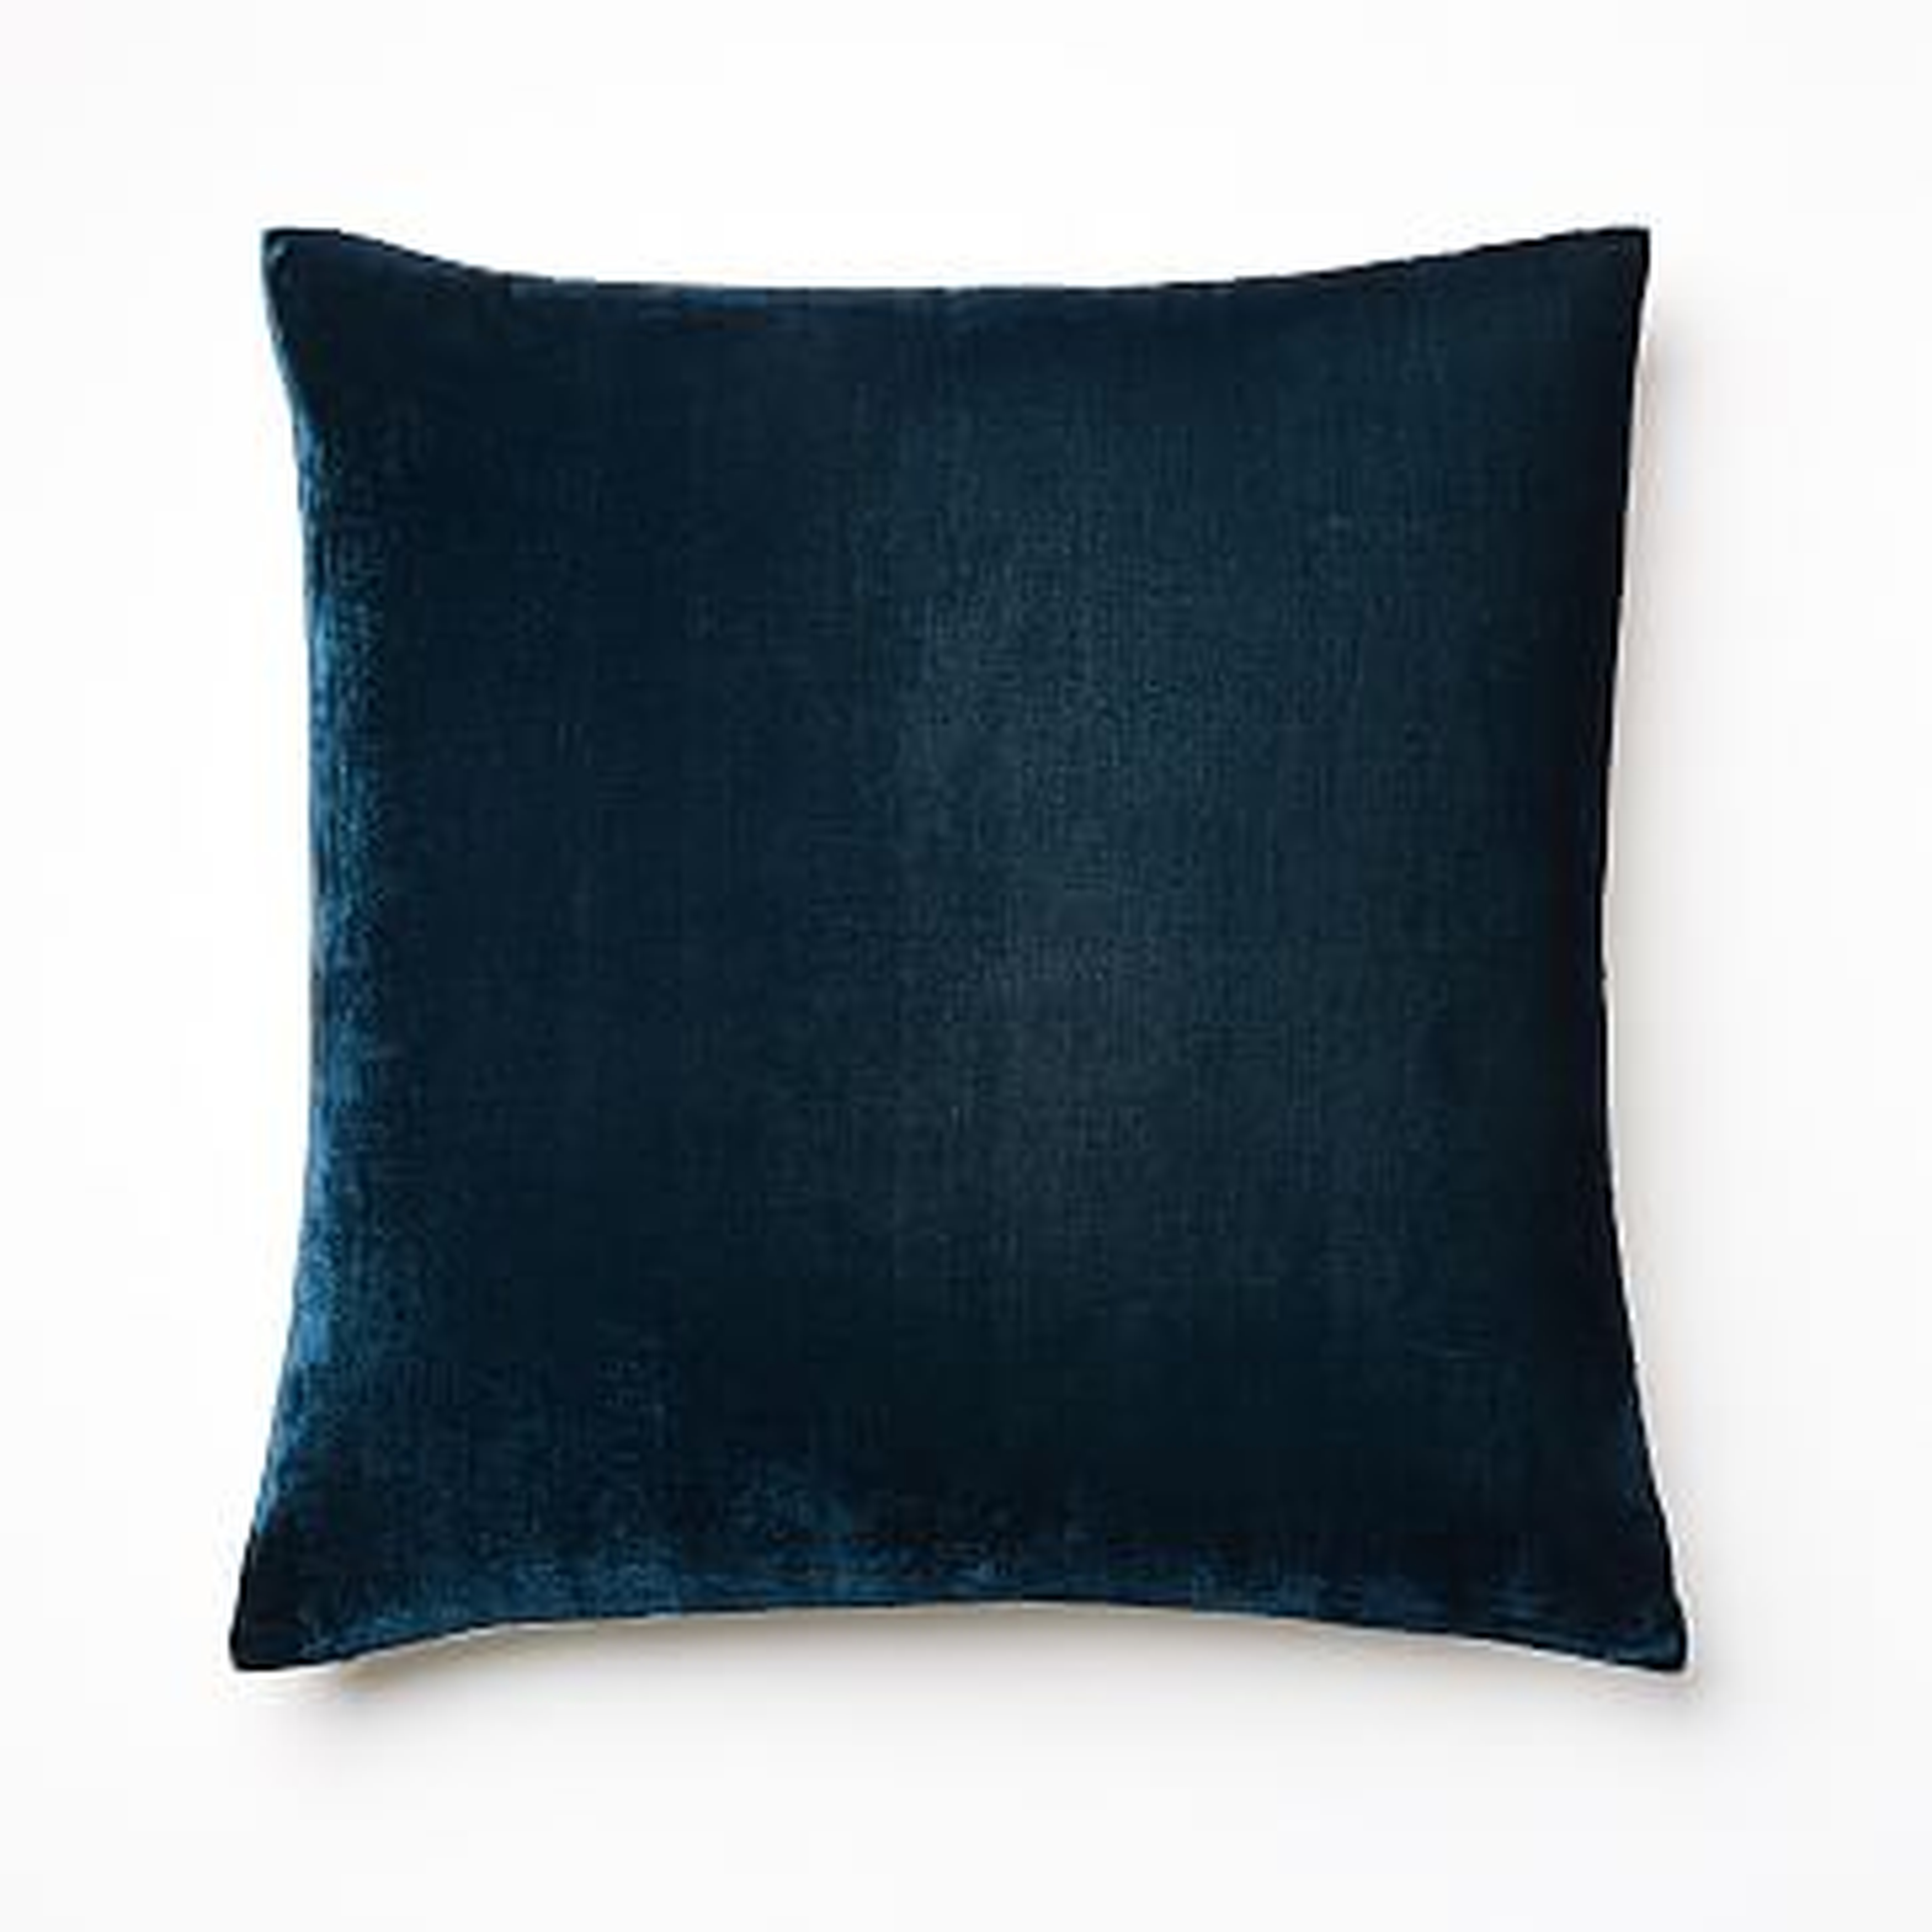 Lush Velvet Pillow Cover, 20"x20", Regal Blue, Individual - West Elm